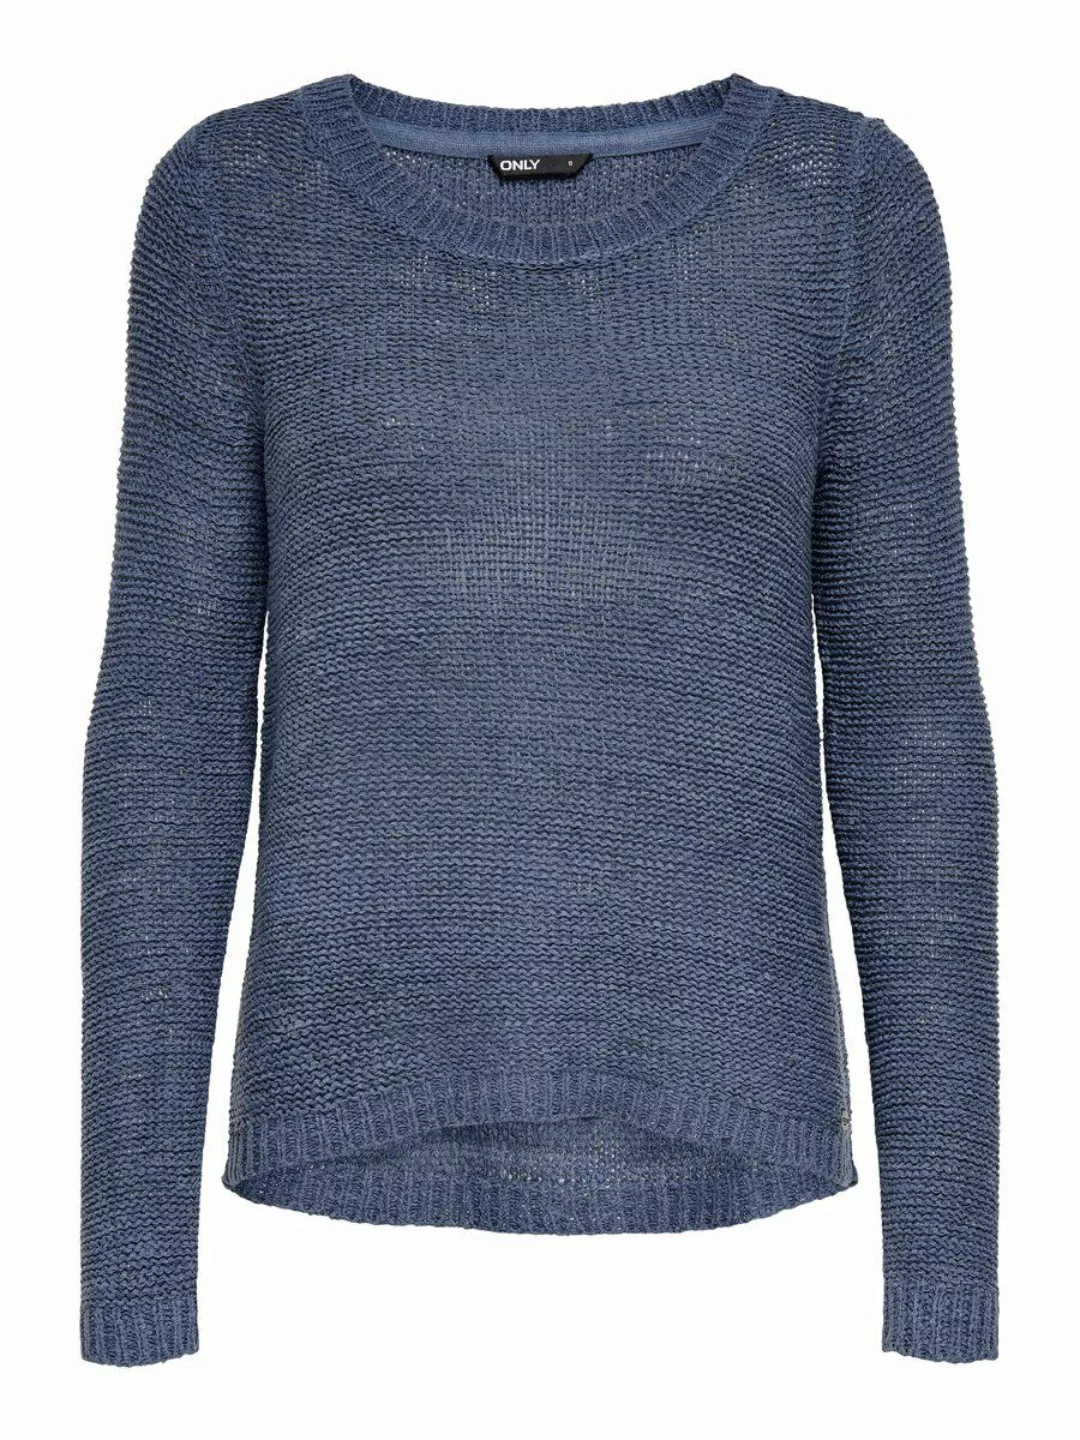 Only Geena Xo Knit Pullover S Vintage Indigo günstig online kaufen